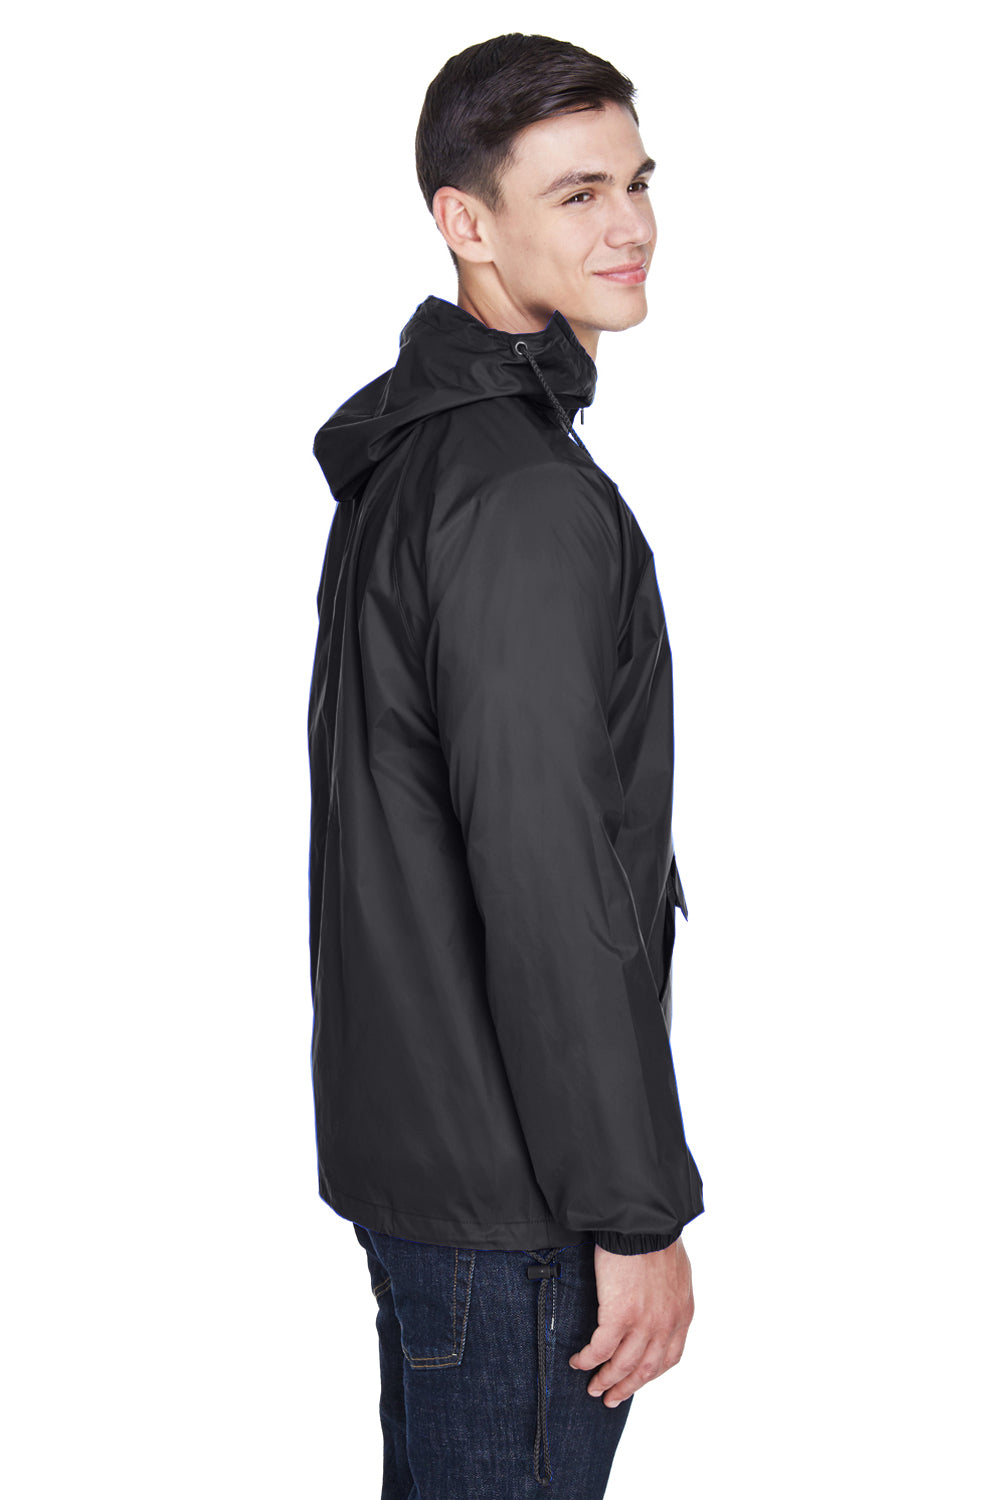 UltraClub 8925 Mens Pack Away Wind & Water Resistant 1/4 Zip Hooded Jacket Black Side